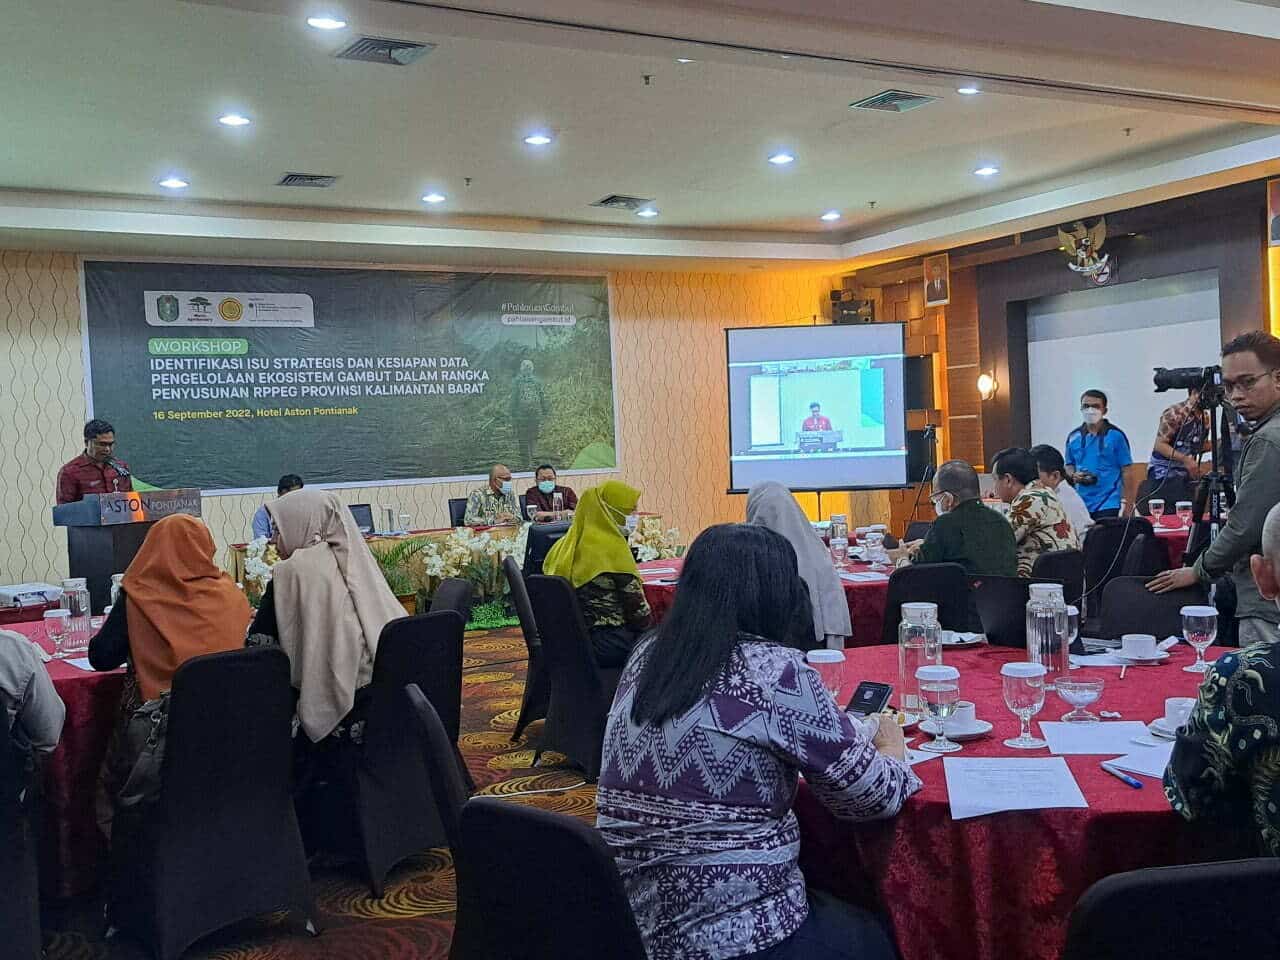 Suasana kegiatan "Lokakarya Identifikasi Isu Strategis dan Kesiapan Data Perlindungan dan Pengelolaan Fungsi Ekosistem Gambut Dalam Rangka Penyusunan RPPEG Provinsi Kalimantan Barat”, di Aston Hotel Pontianak, Jumat (16/09/2022). (Foto: Istimewa)